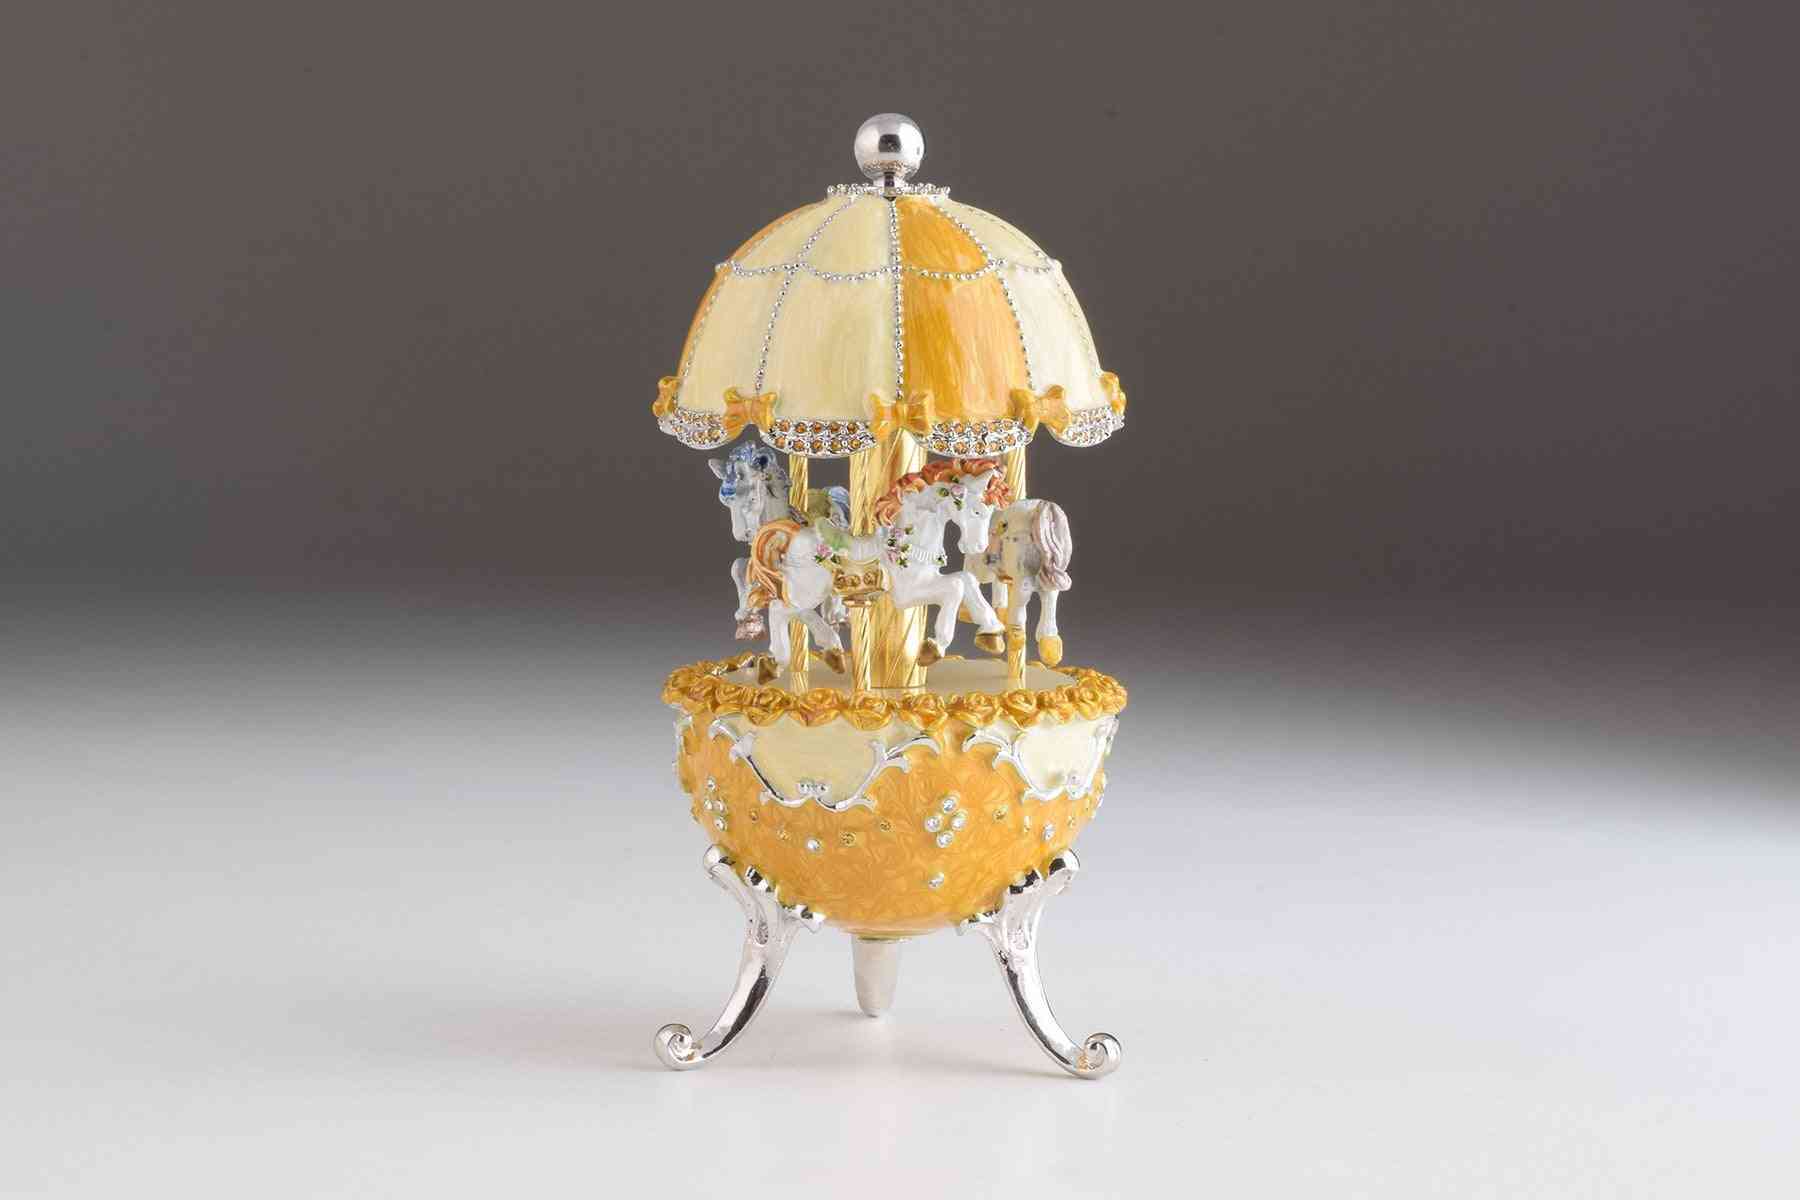 Faberge egg karusell vind opp musikk pynt